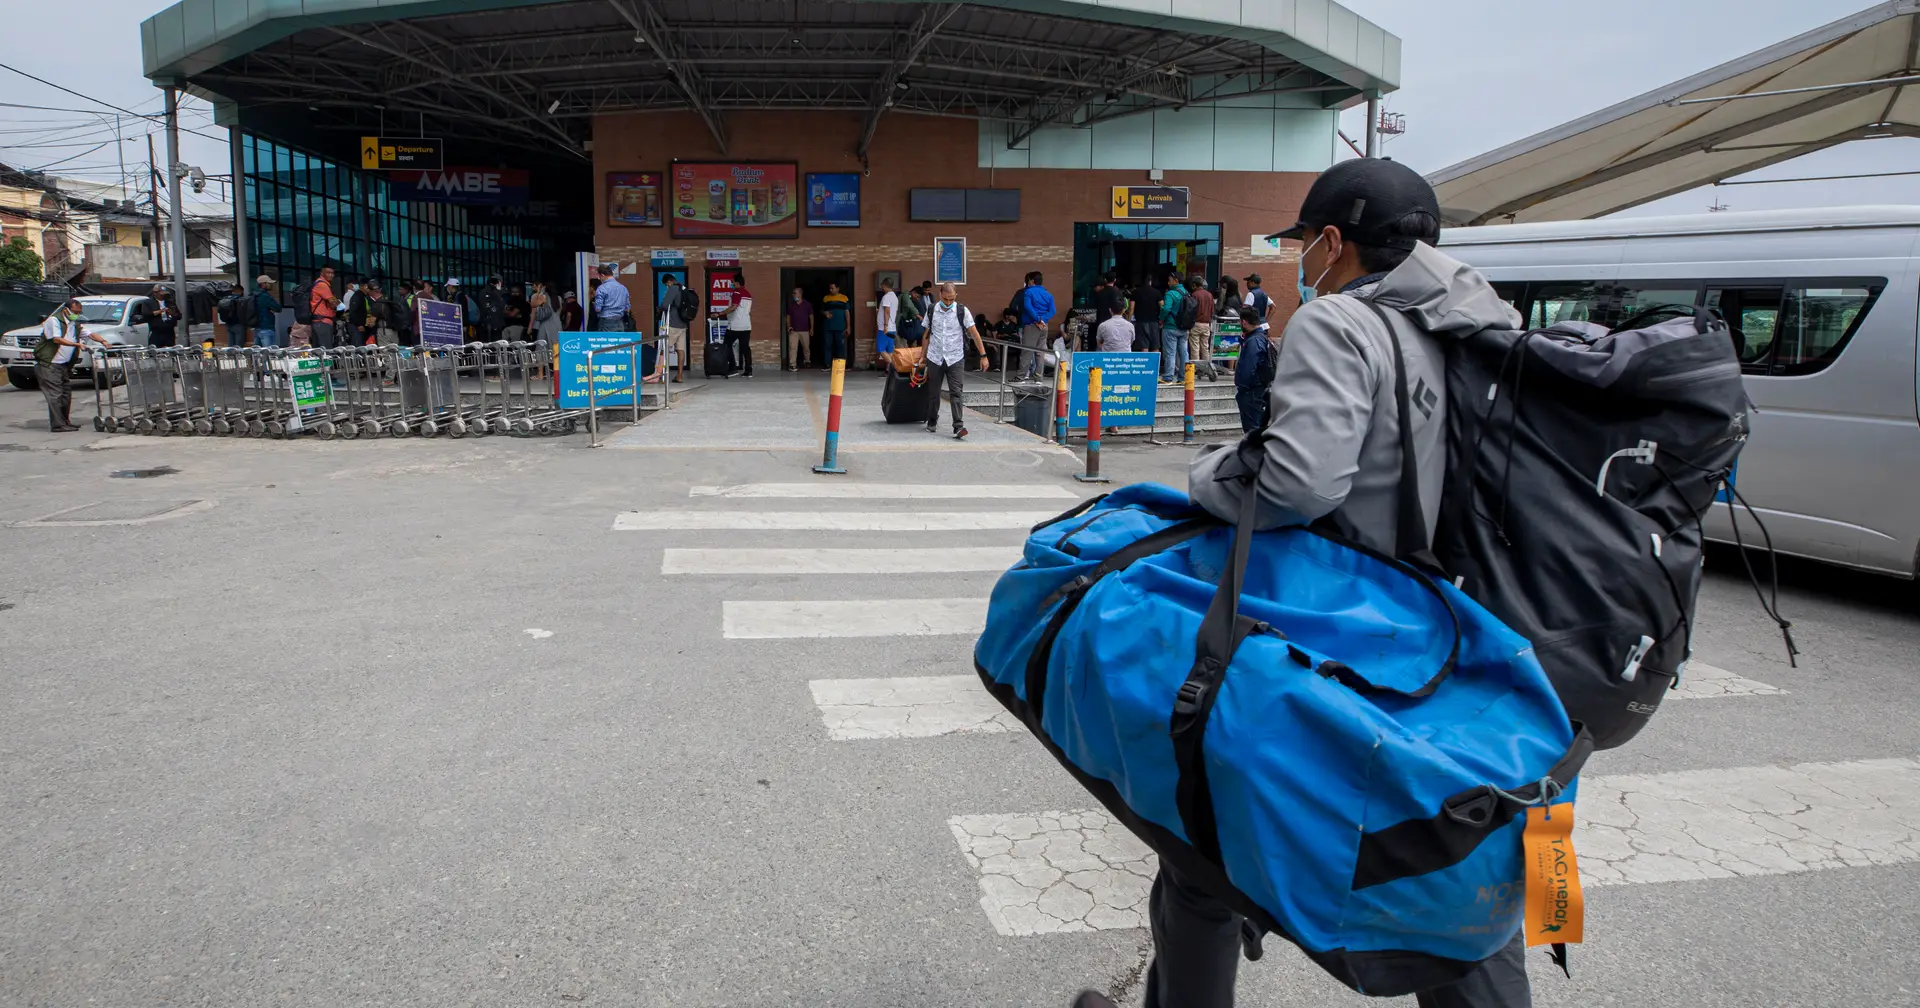 Mau tempo obriga a suspender operações de busca por avião nepalês